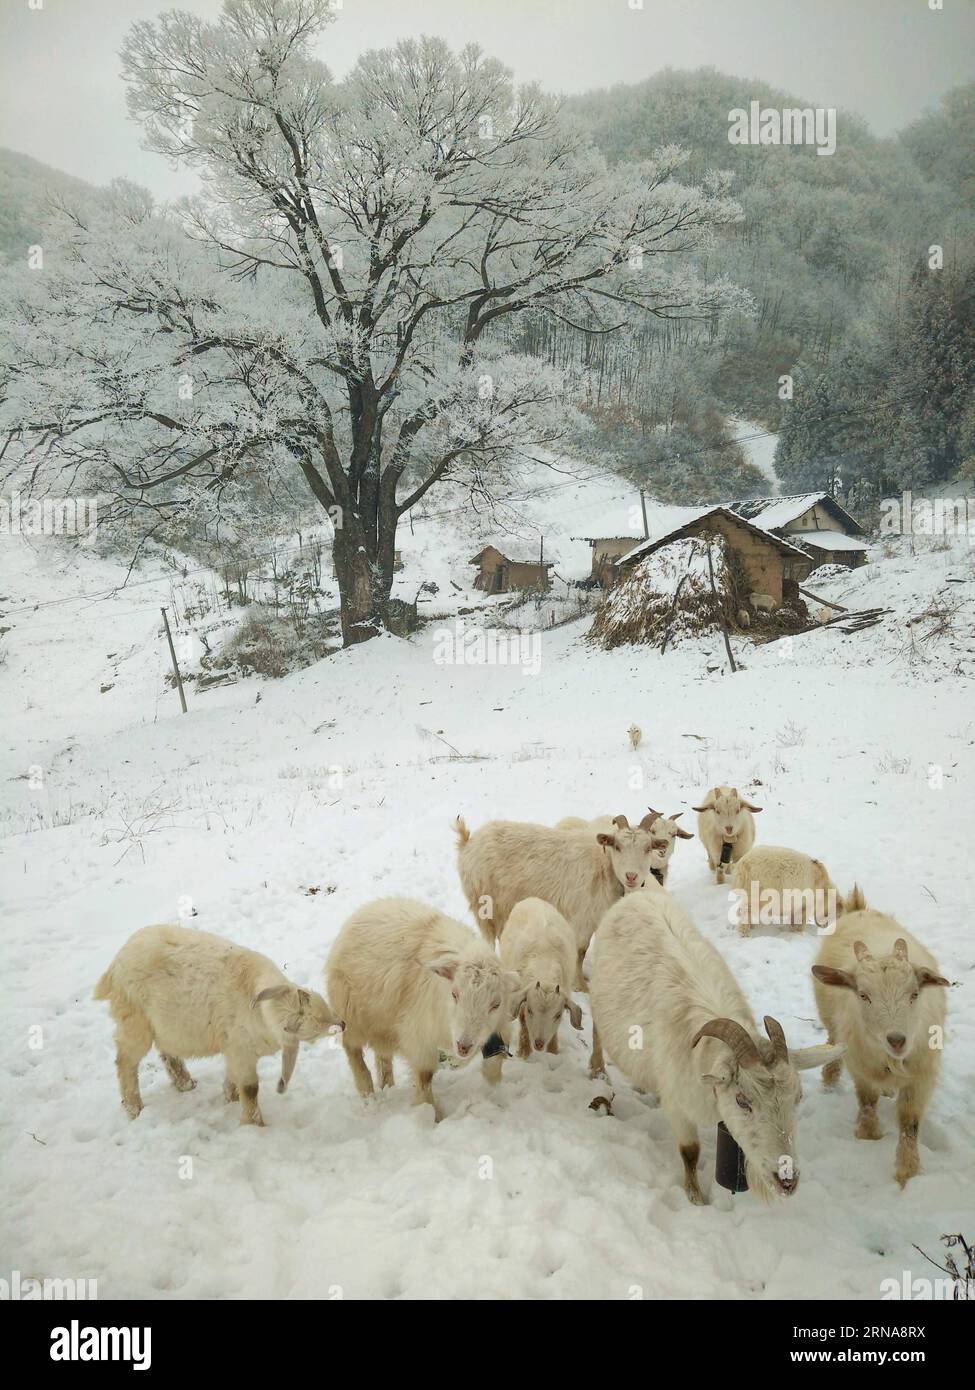 XIANGYANG, le 13 janvier 2016 -- des moutons paissent sur des terres couvertes de rime dans le canton de Longping, dans le comté de Baokang, dans la ville de Xiangyang, province du Hubei, au centre de la Chine, le 13 janvier 2016.) (Ry) CHINA-HUBEI-XIANGYANG-RIME SCENERY (CN) YangxTao PUBLICATIONxNOTxINxCHN Xiang Yang Jan 13 2016 moutons Graz SUR rime pays couvert À long Ping Township du comté de Baokang dans la ville de Xiang Yang Chine centrale S Hubei province de Hubei Jan 13 2016 Ry China Hubei Xiang Yang Yang Yang Yang Yang Yang Yim Scene Scenery CN Banque D'Images